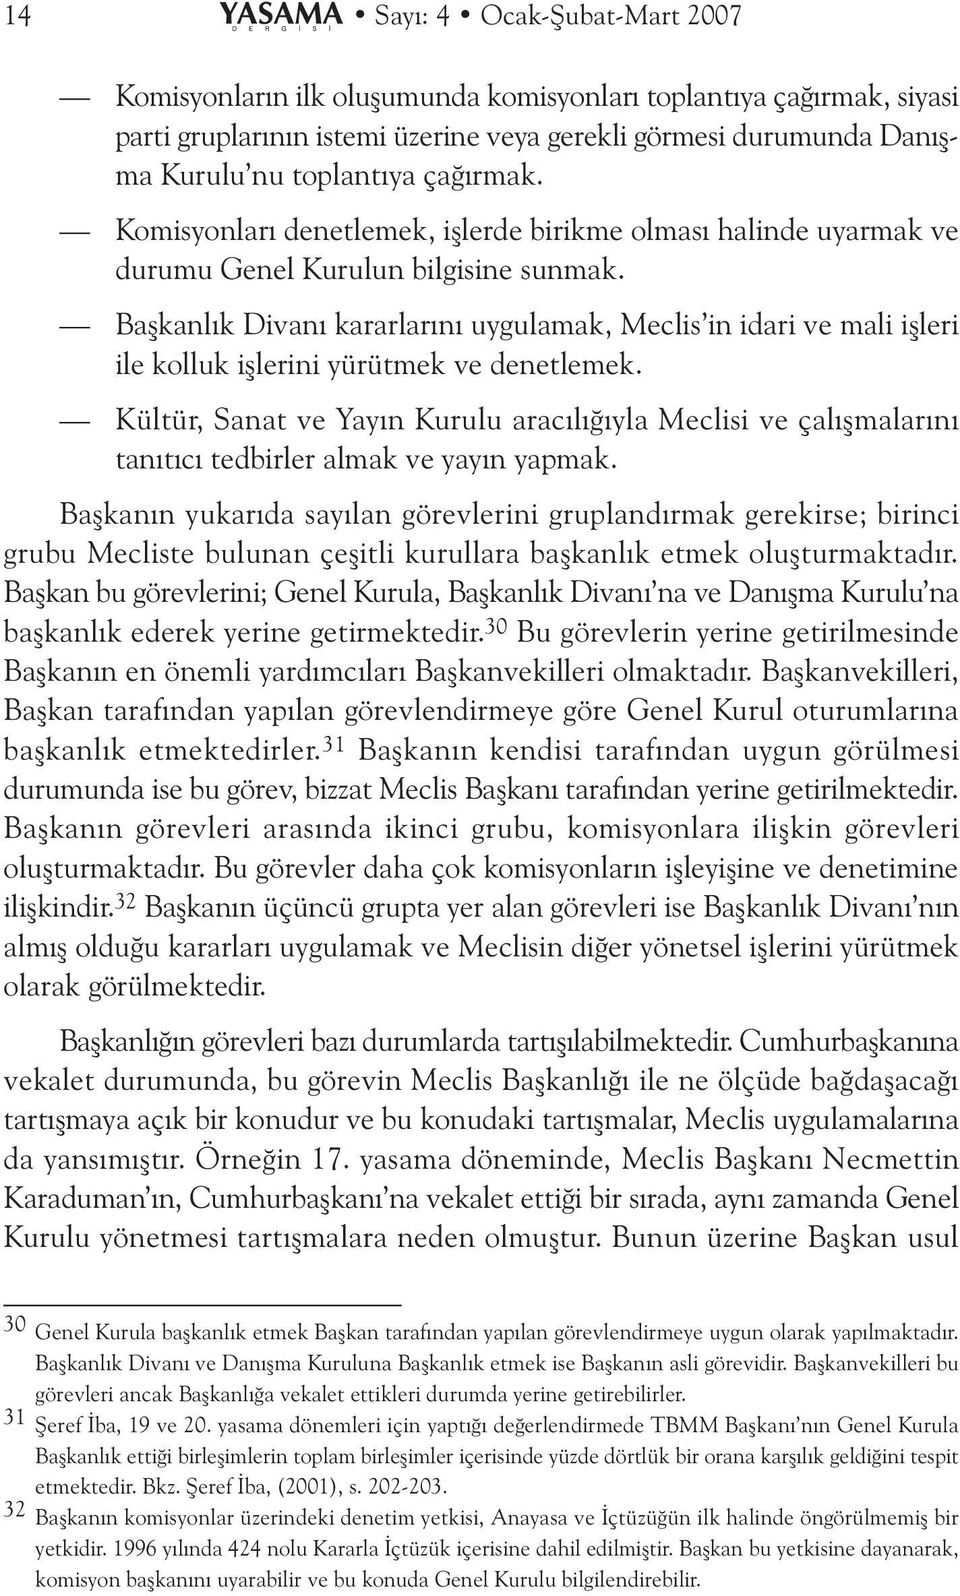 Baþkanlýk Divaný kararlarýný uygulamak, Meclis in idari ve mali iþleri ile kolluk iþlerini yürütmek ve denetlemek.